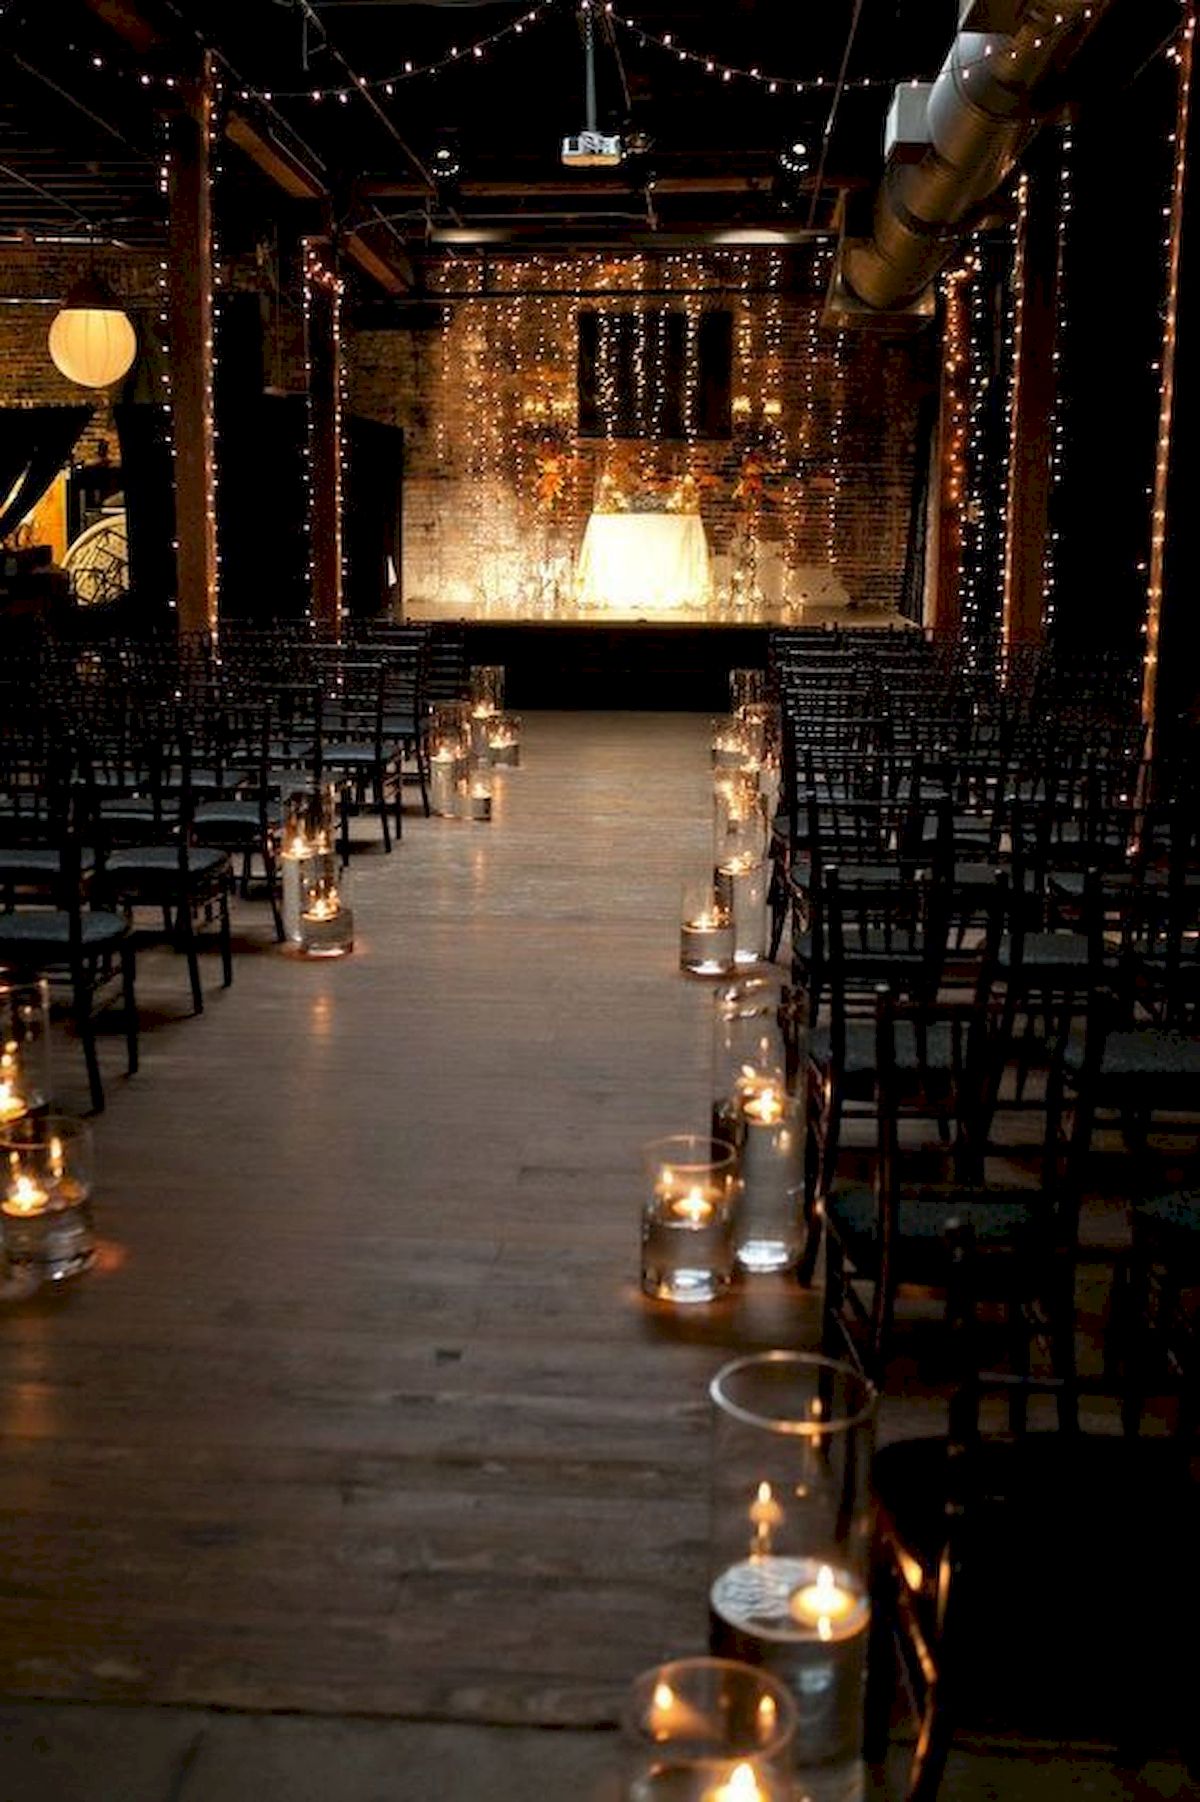 décoration lumineuse mariage allée nuptiale lanternes et bougies